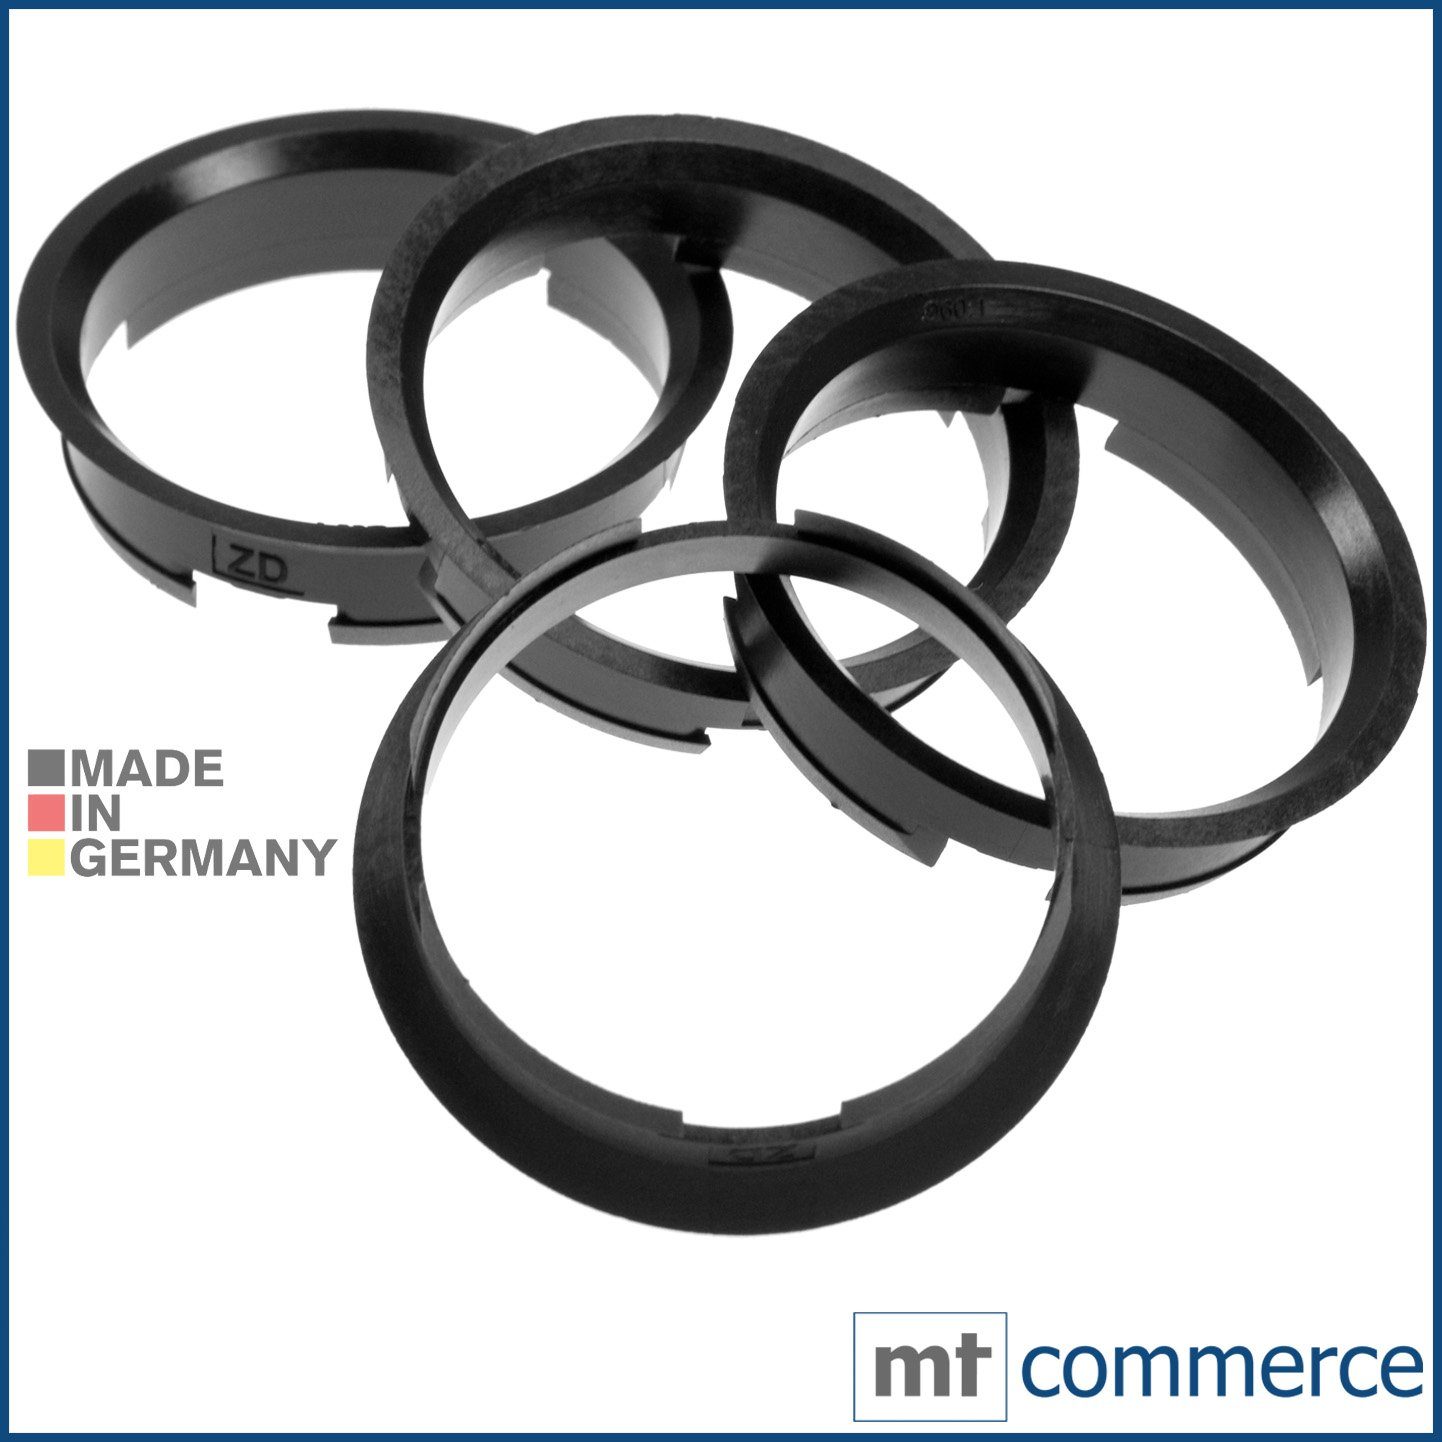 RKC Reifenstift 4X Zentrierringe schwarz Felgen Ringe Made in Germany, Maße: 63,4 x 60,1 mm